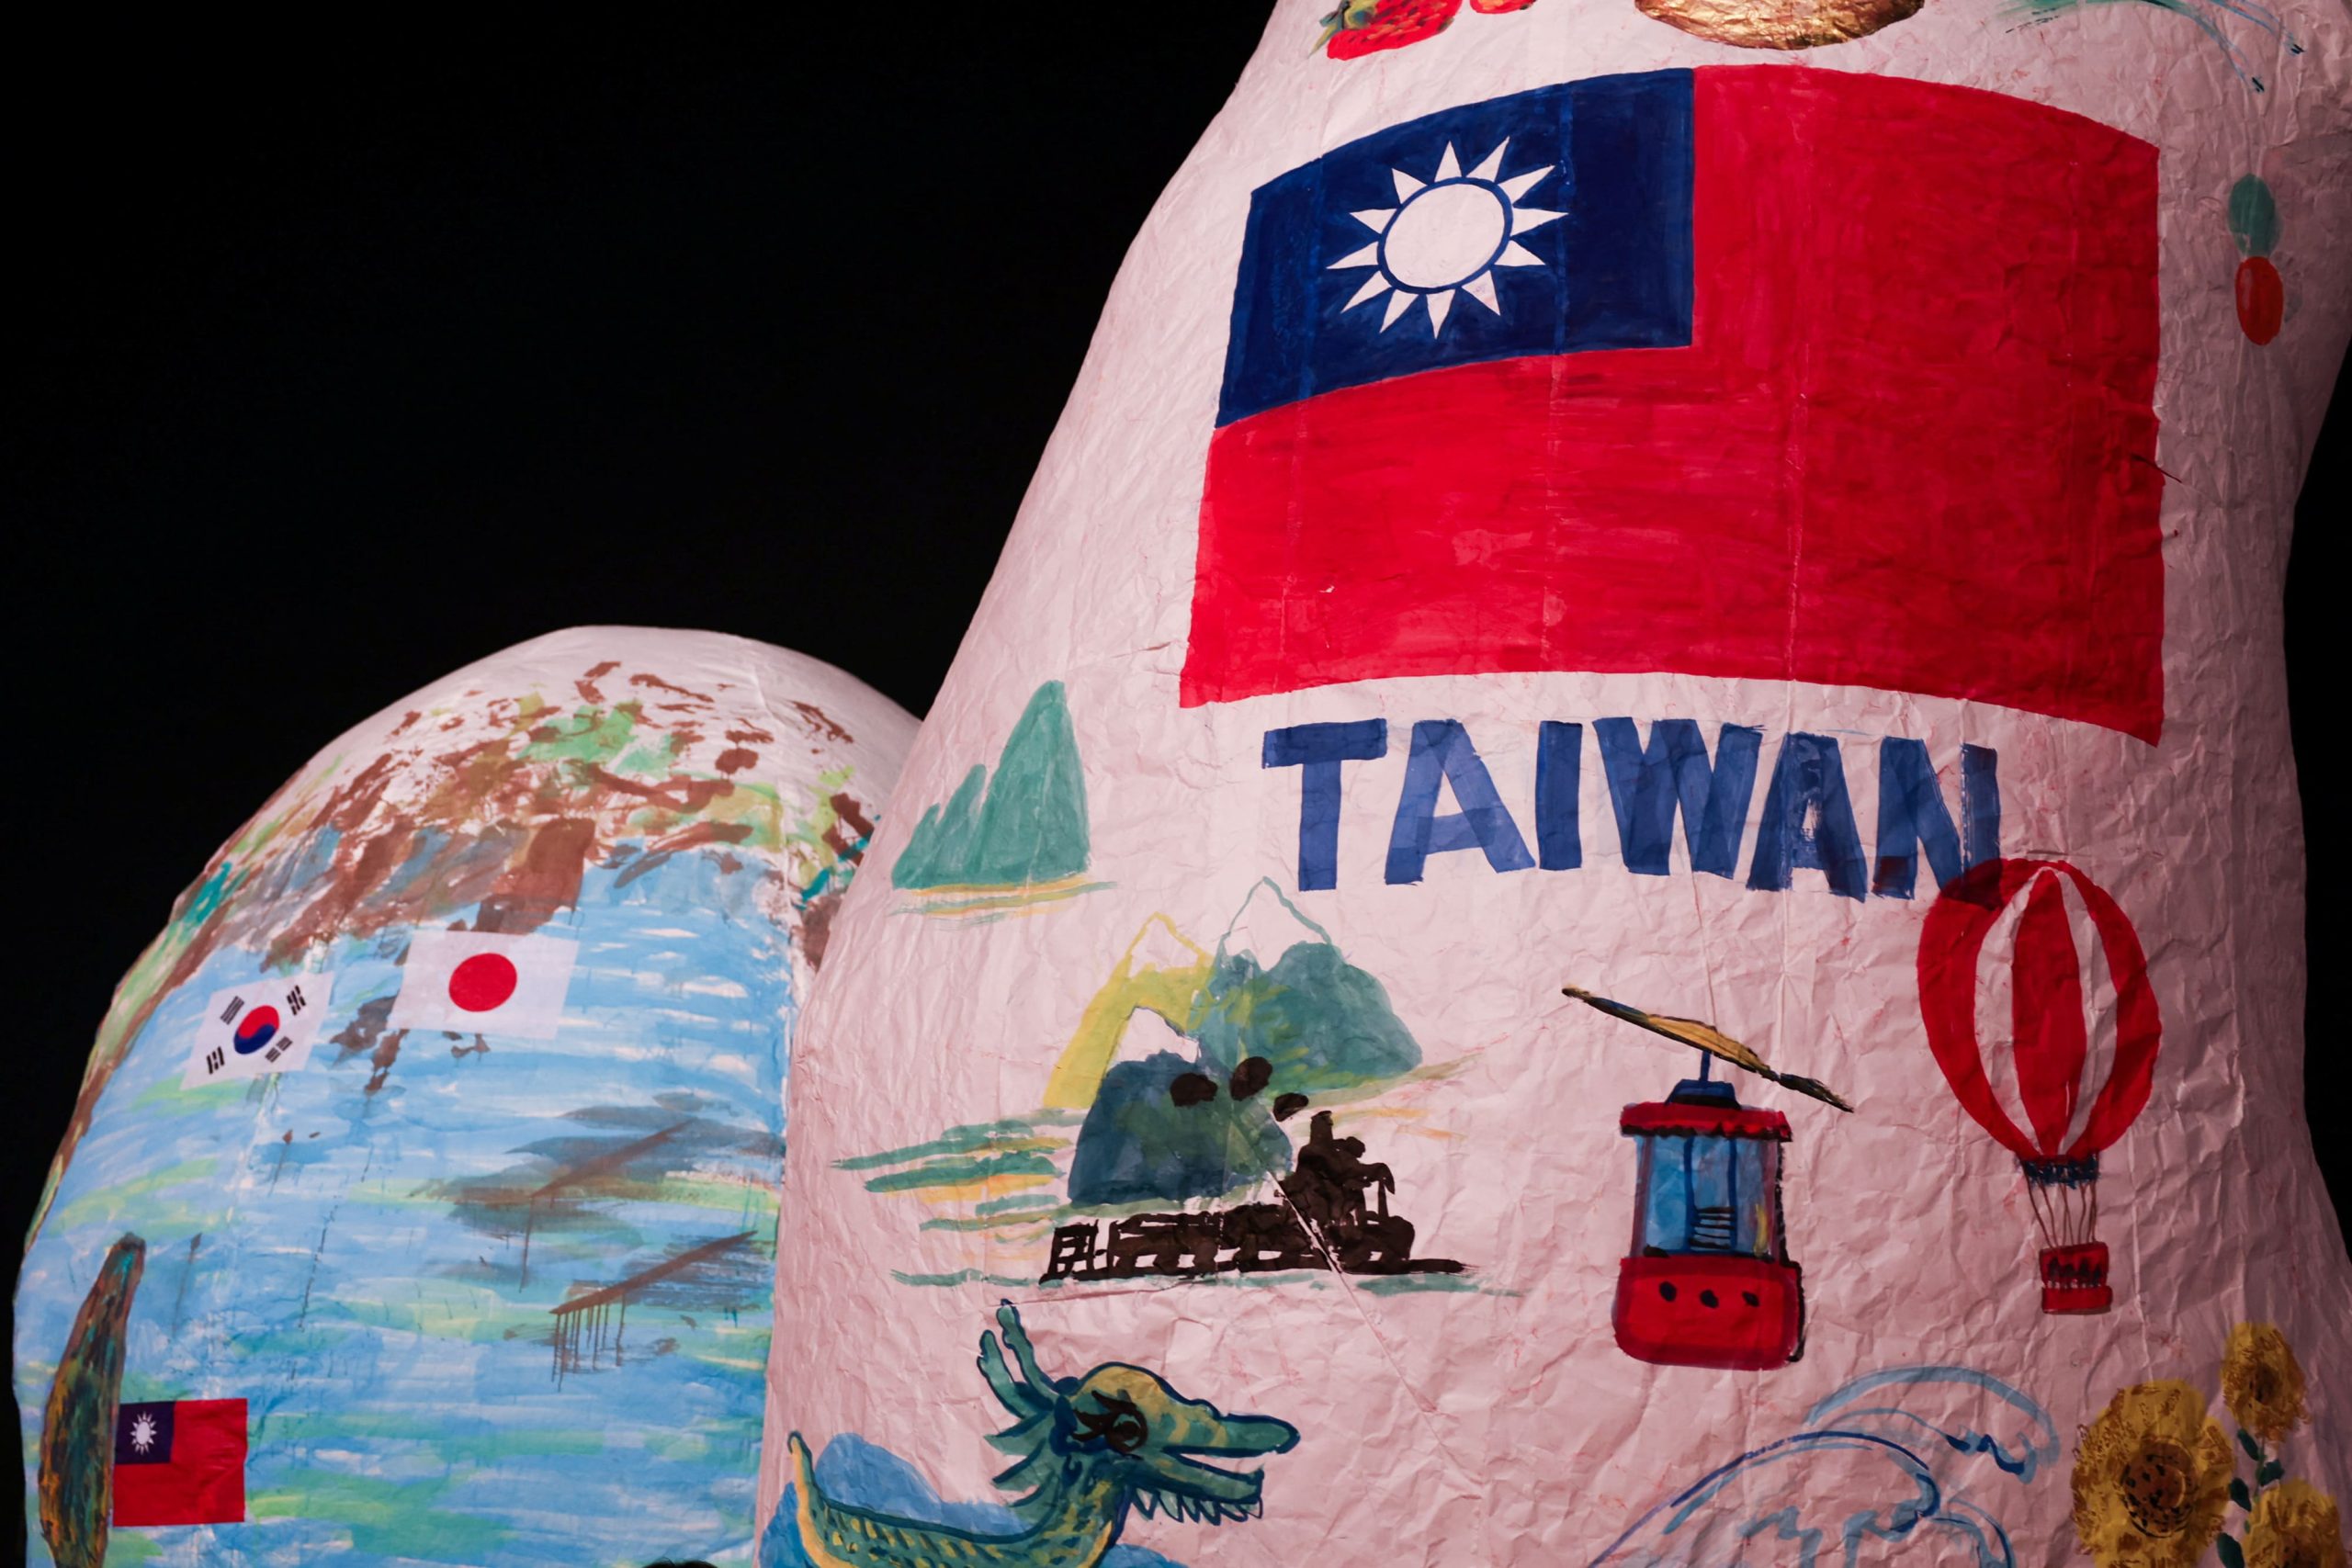 遏制外部势力干预台湾  中共重申坚定推动统一